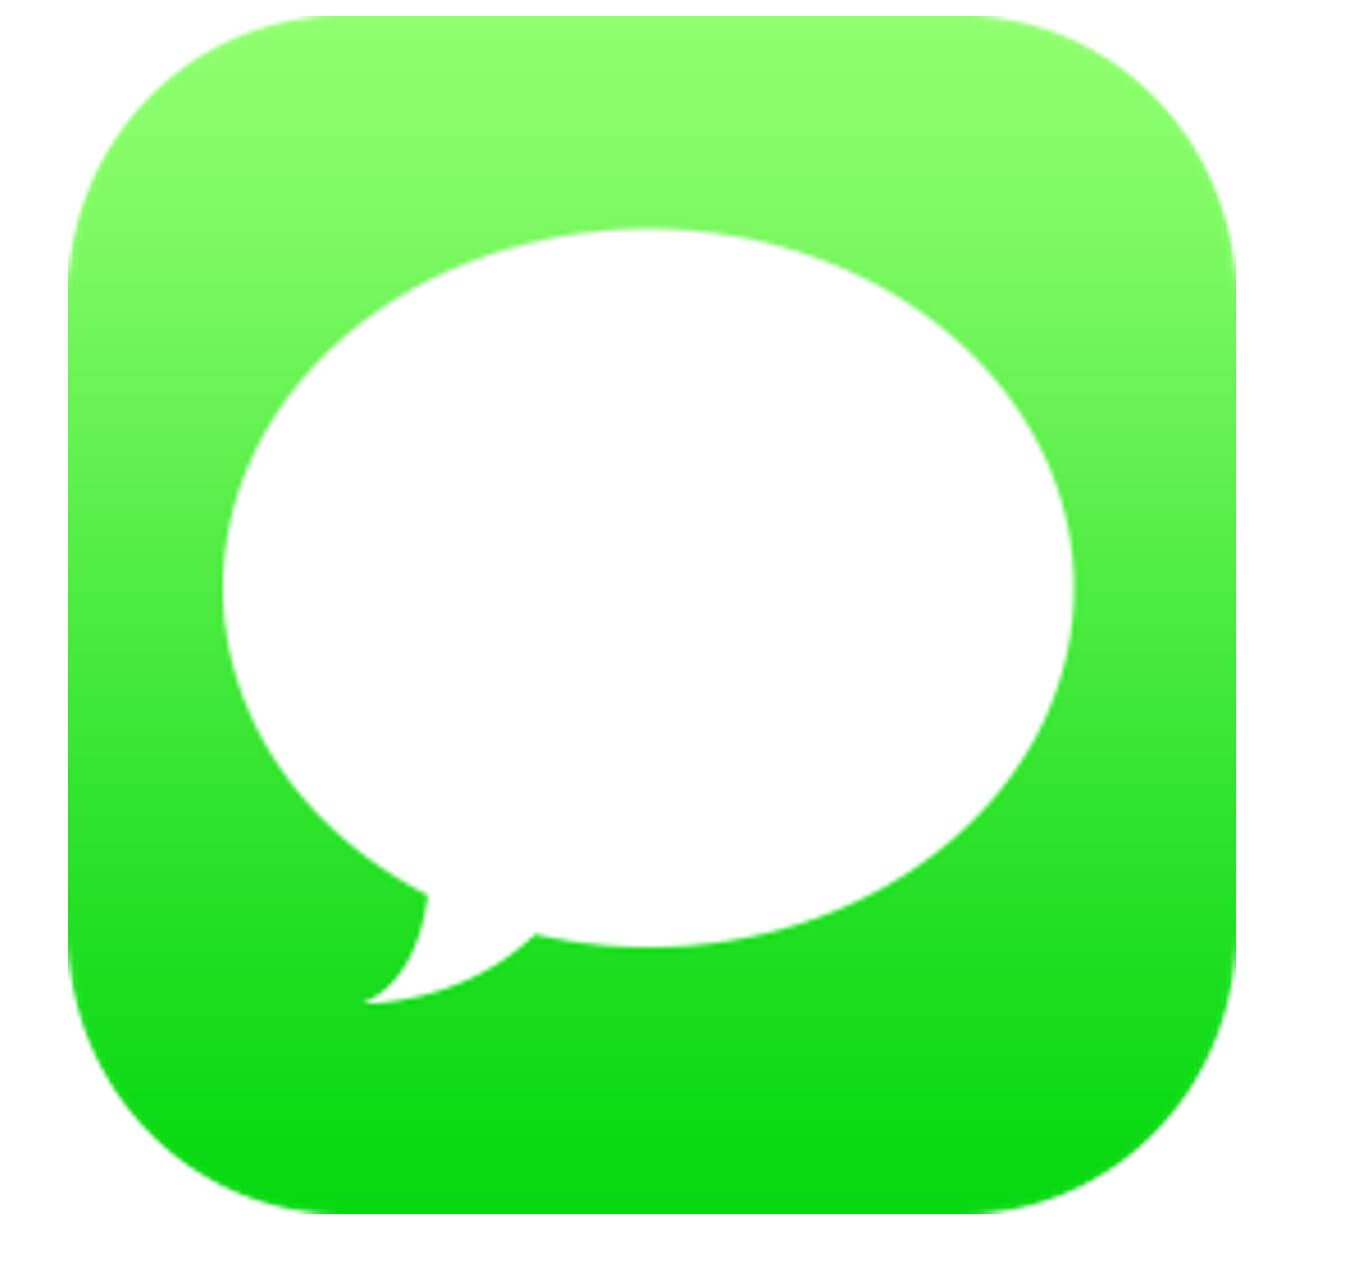 Icône de messages avec arrière-plan vert pour montrer à quoi ressemble l'application messages sur iPad.
